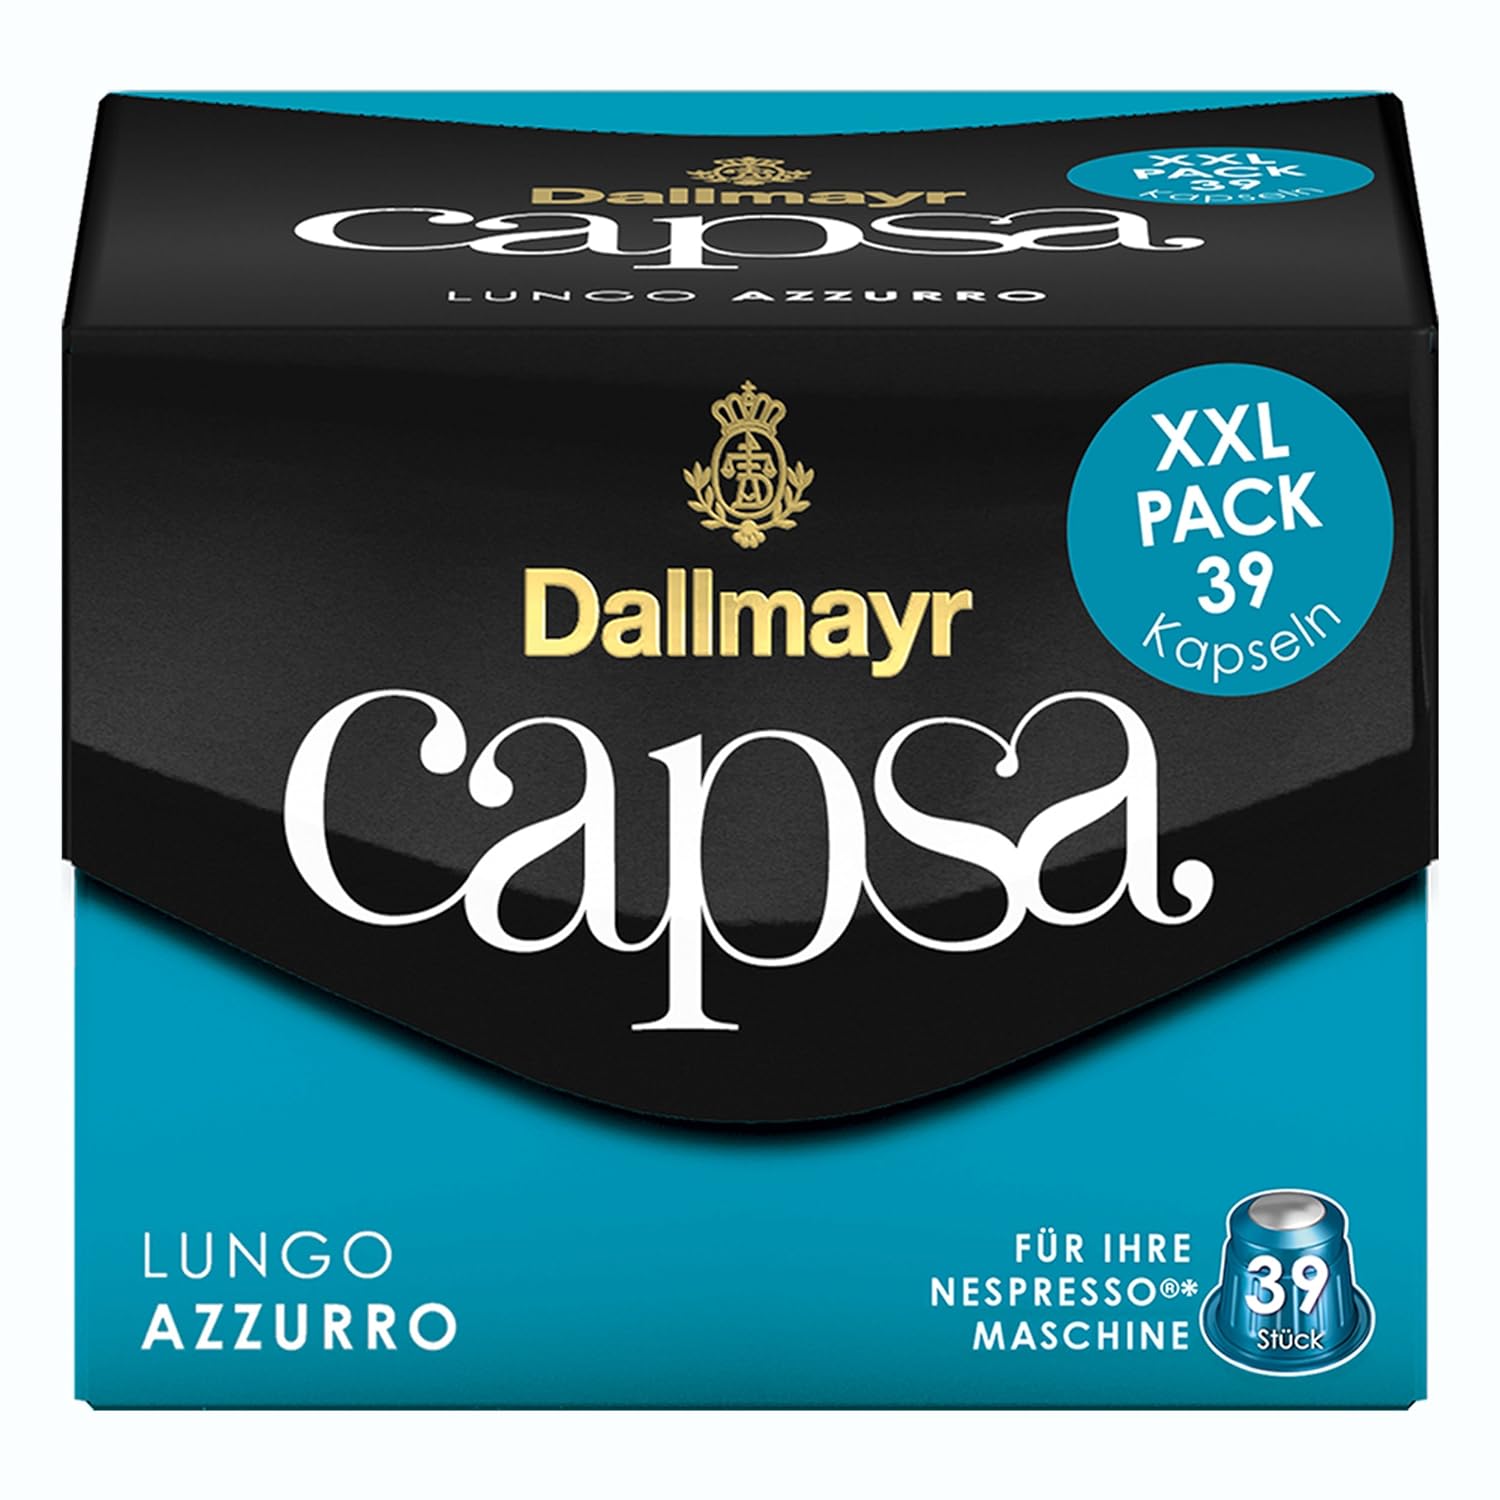 Dallmayr Capsa Lungo Azzurro XXL Nespresso Compatible Capsule, Roasted Coffee, 195 Capsules of 5.6 g